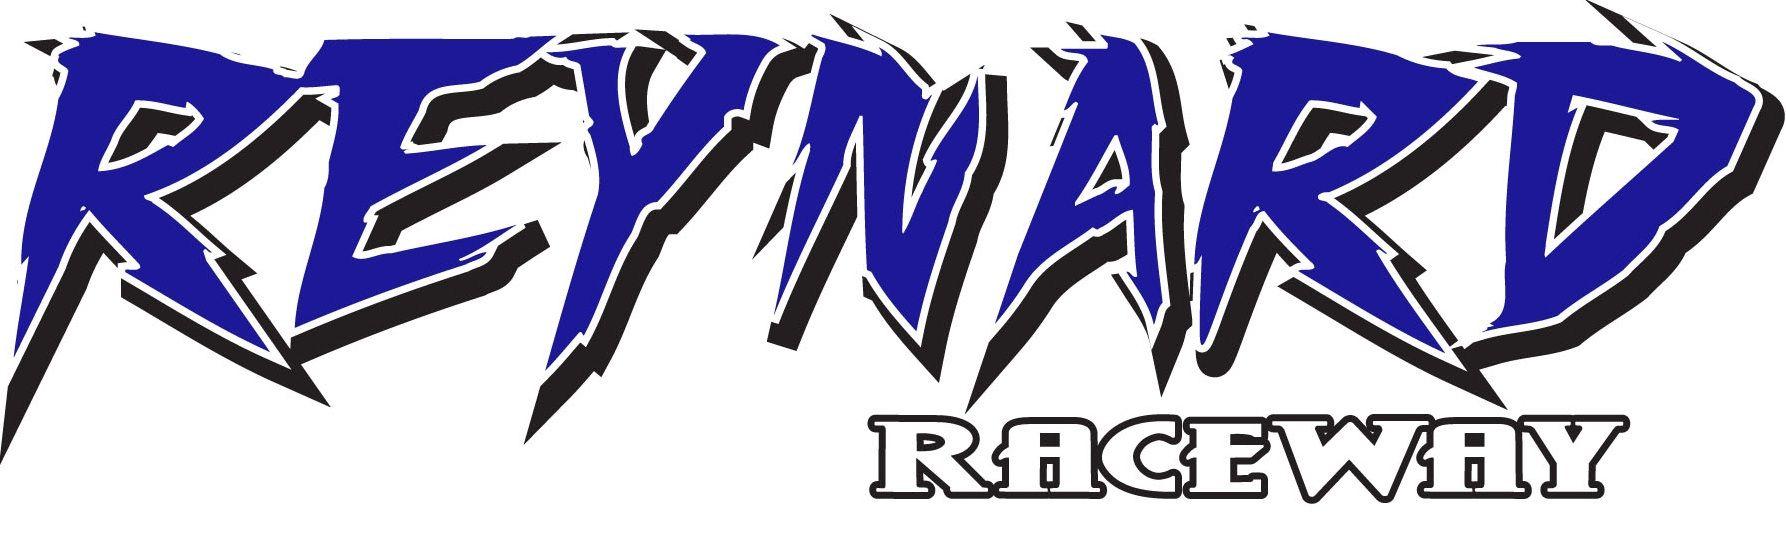 Freedom Blue Logo - Reynard Raceway Blue Logo for Freedom